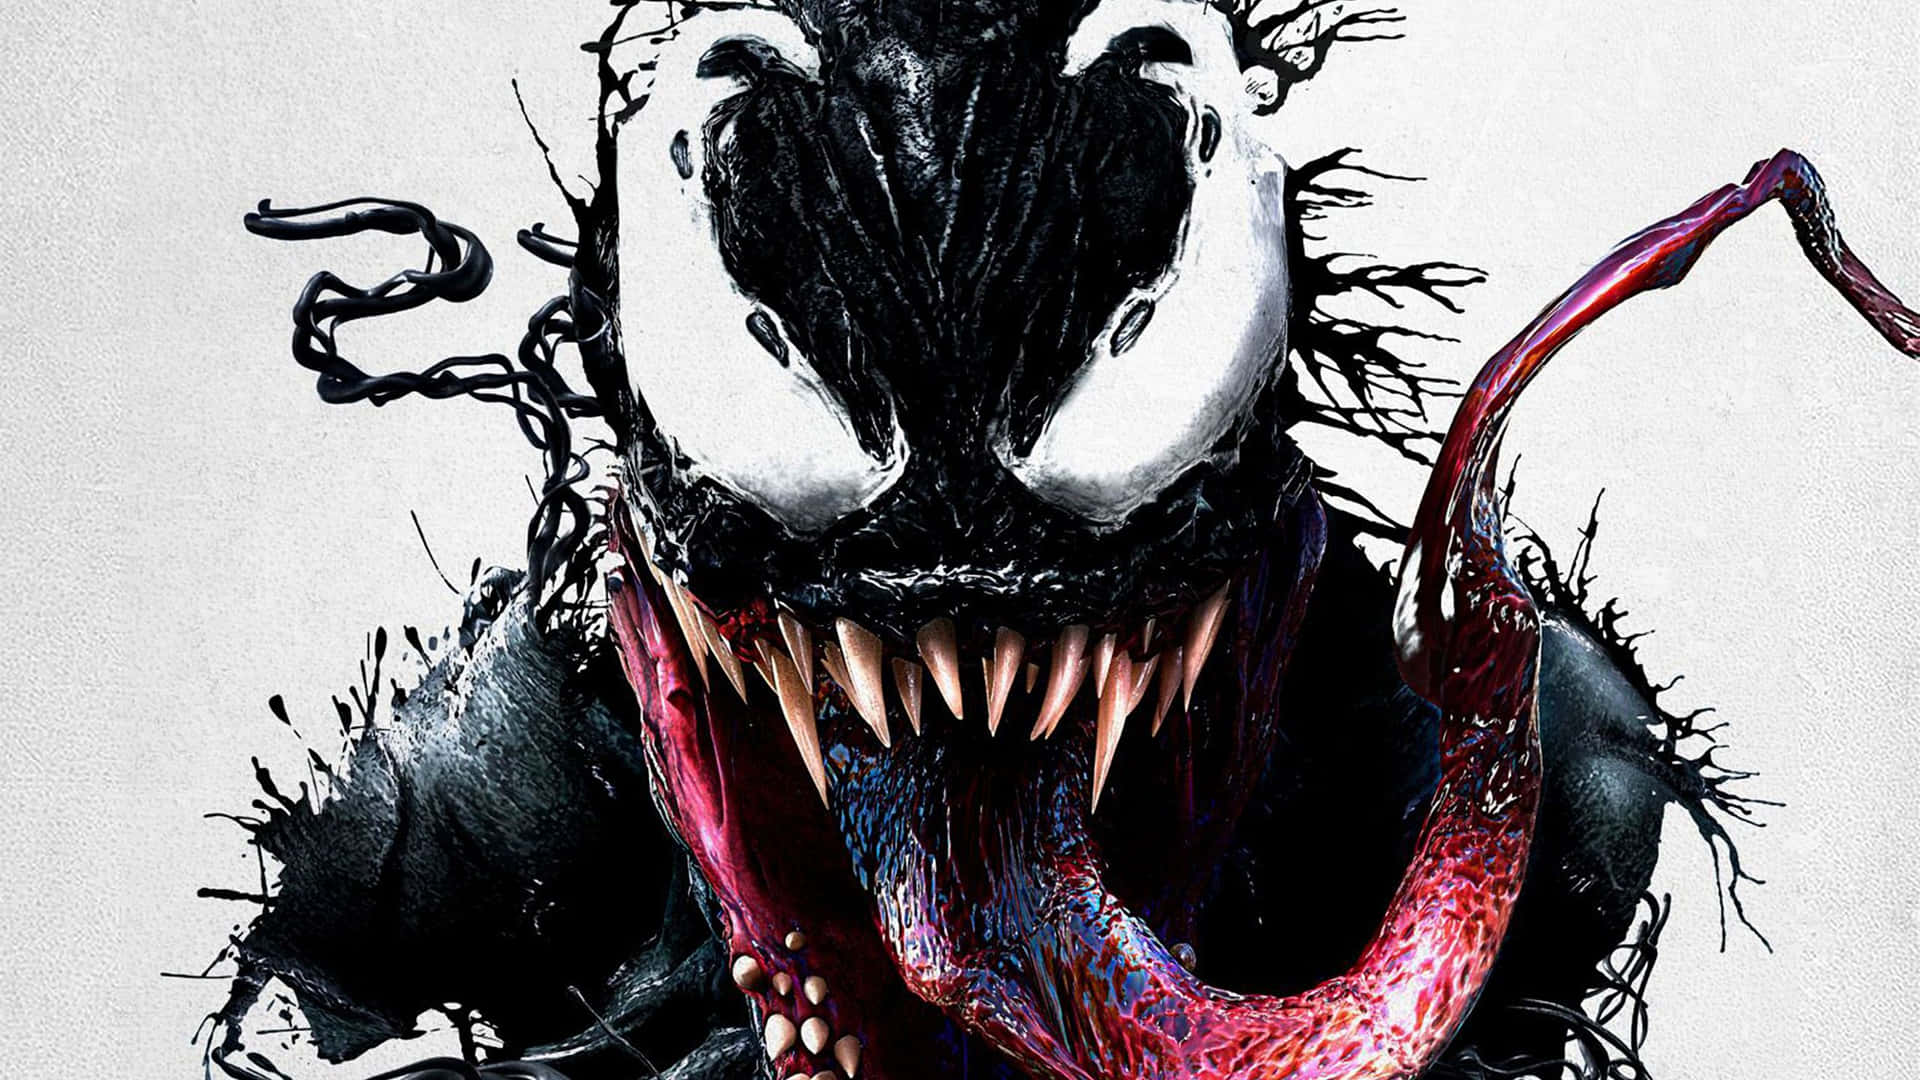 Immaginedettagli Astratti Ingranditi Del Personaggio Di Venom Sfondo